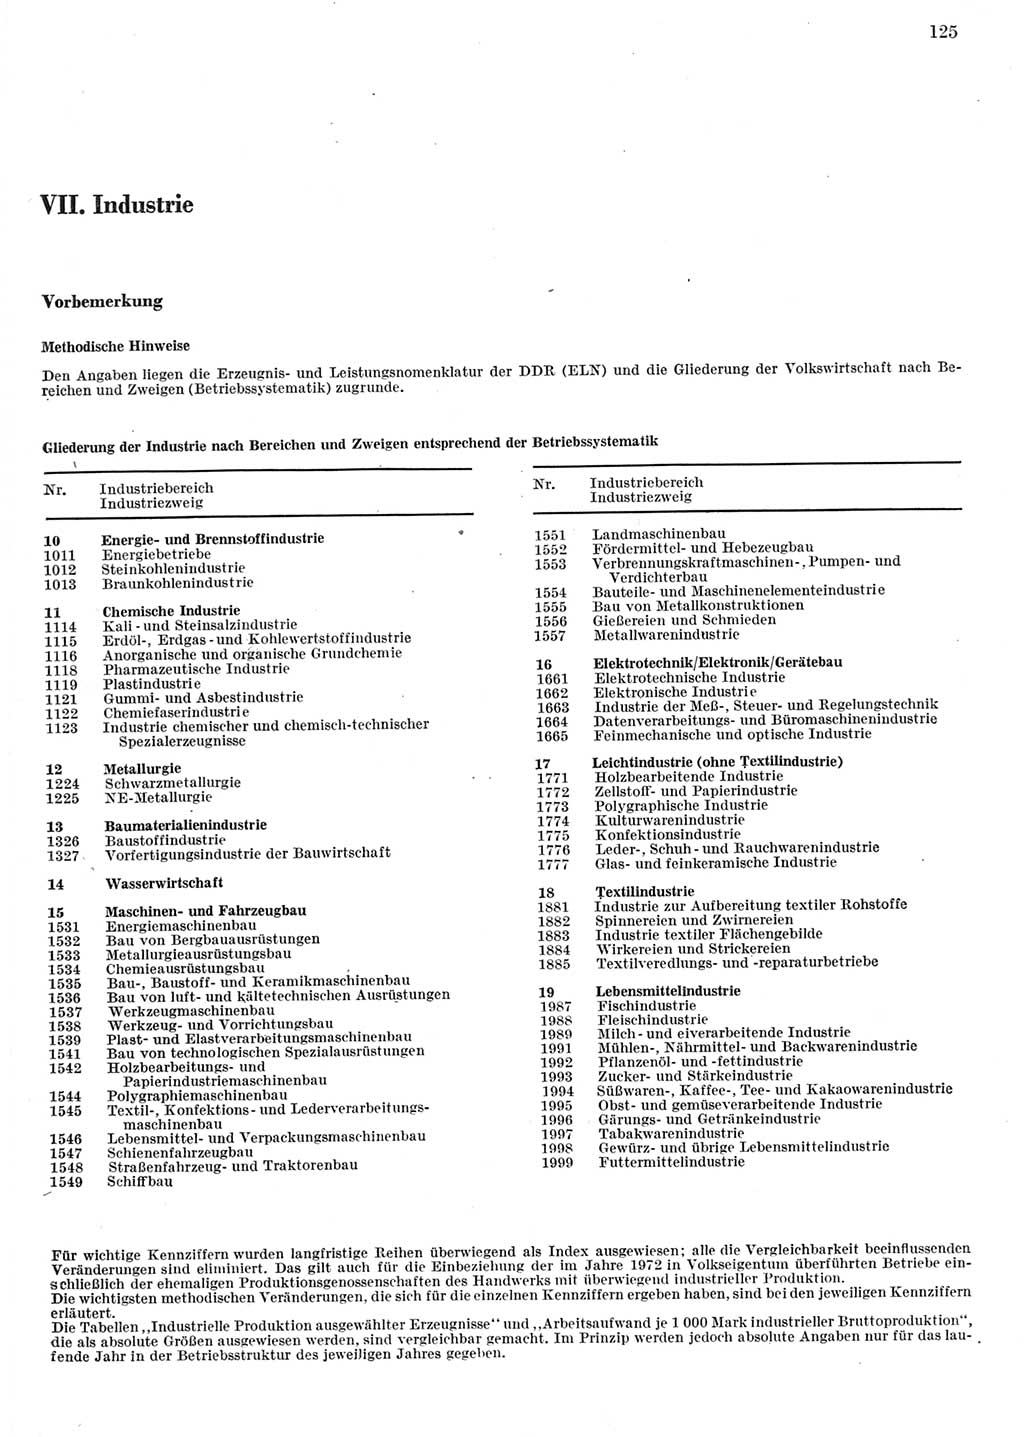 Statistisches Jahrbuch der Deutschen Demokratischen Republik (DDR) 1982, Seite 125 (Stat. Jb. DDR 1982, S. 125)